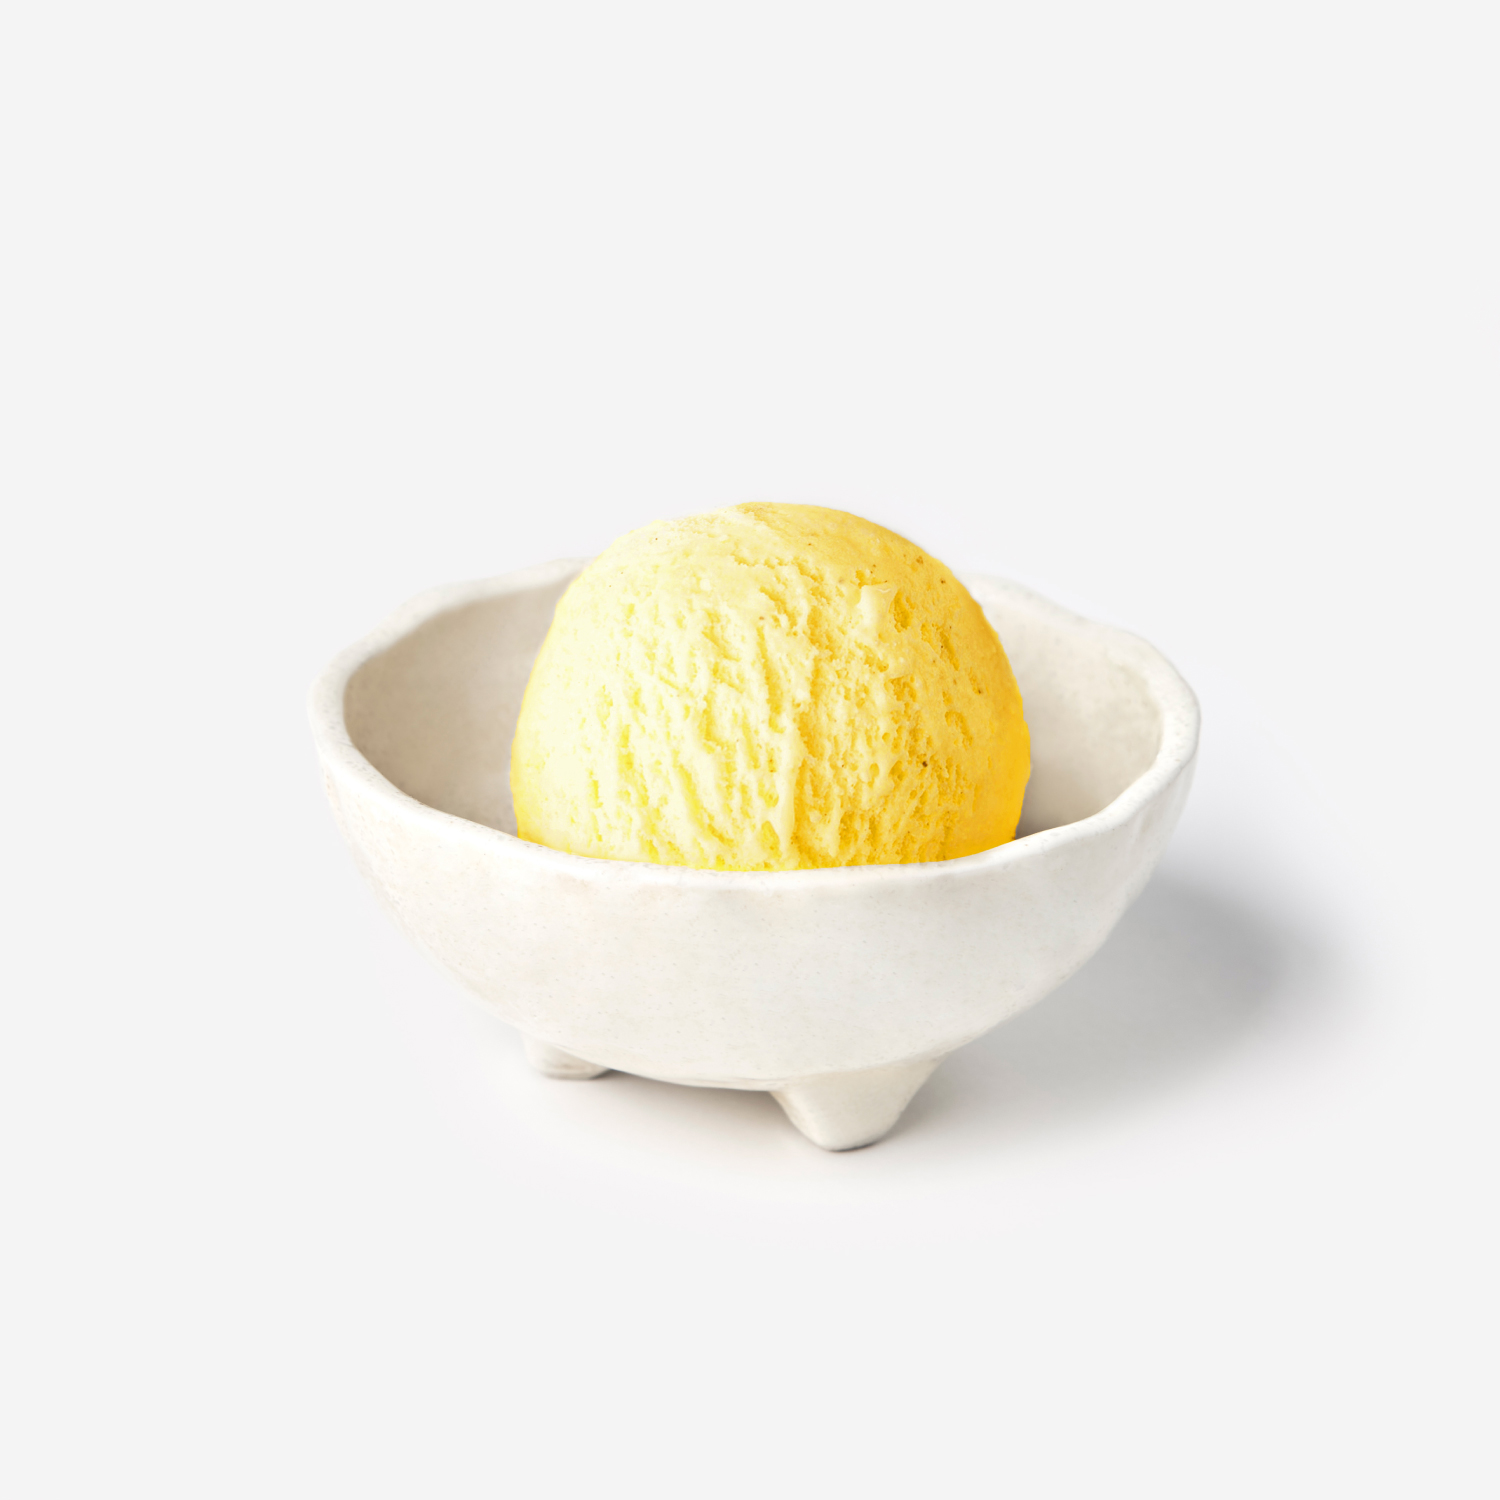 ไอศกรีม : SYNOVA ยูซุเซอร์เบทไอศกรีม 4 L (แพน)